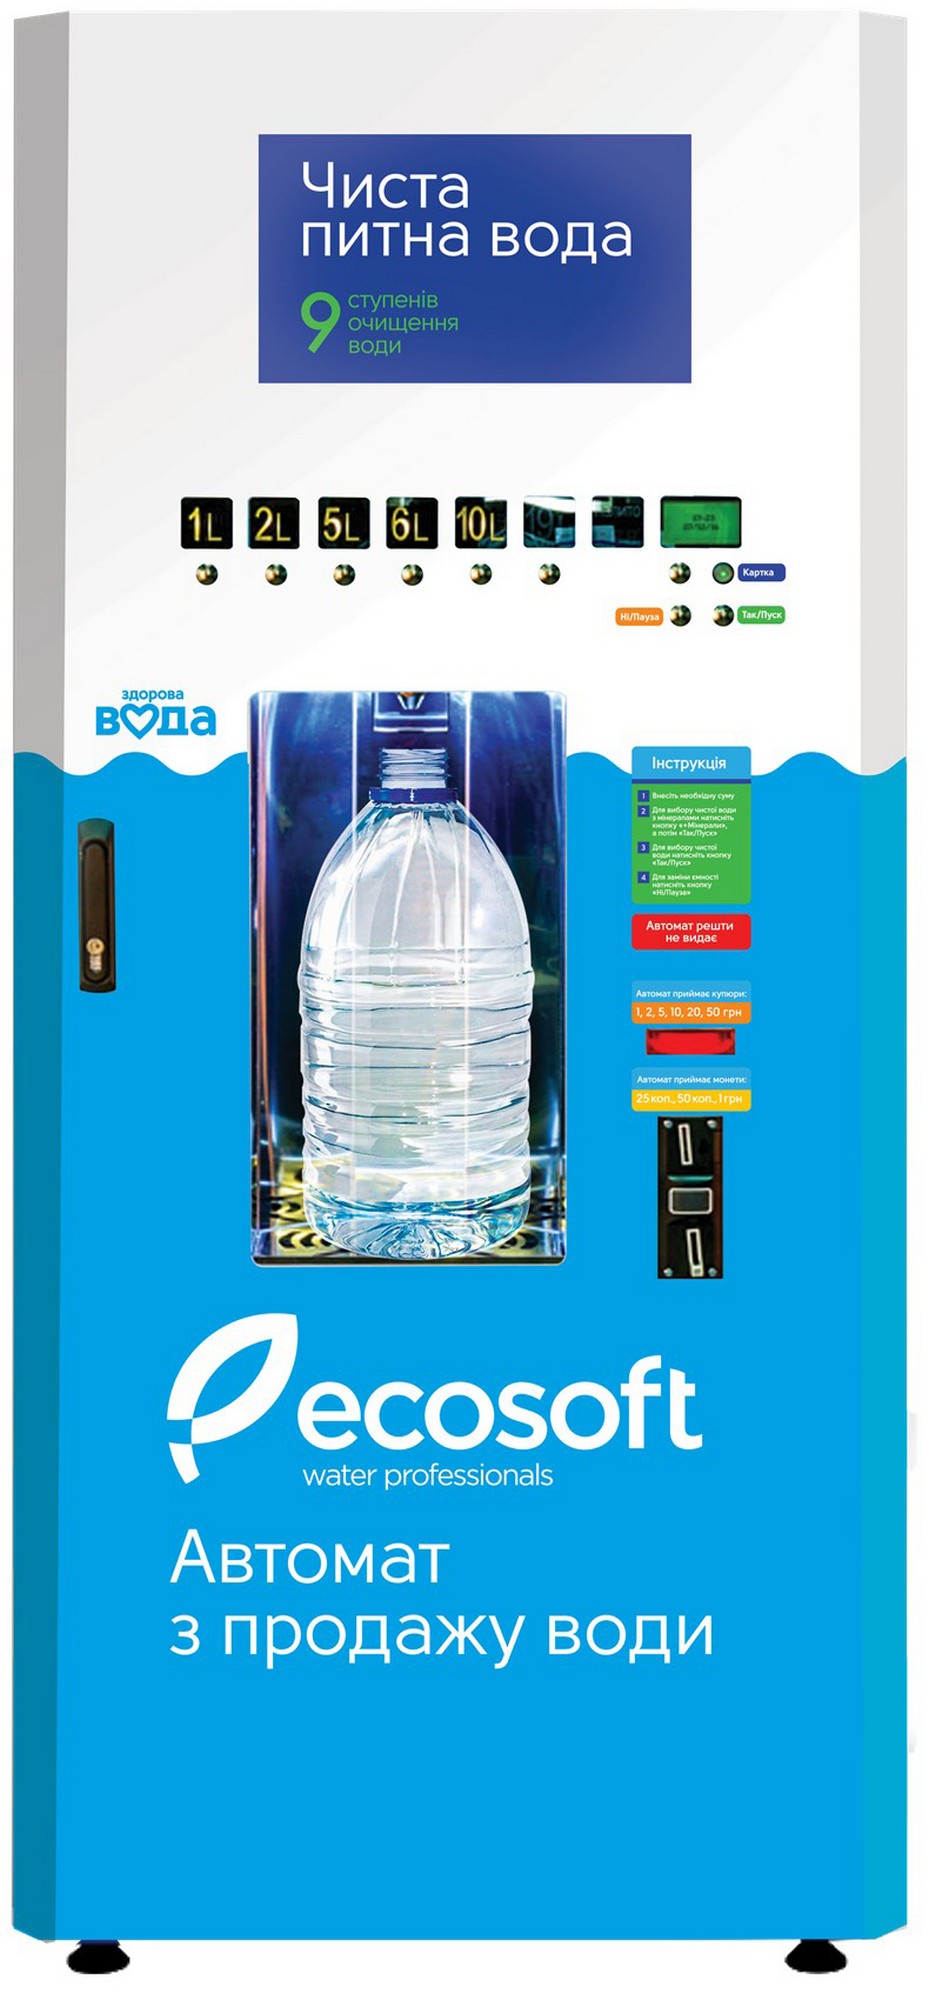 Ecosoft КА-250